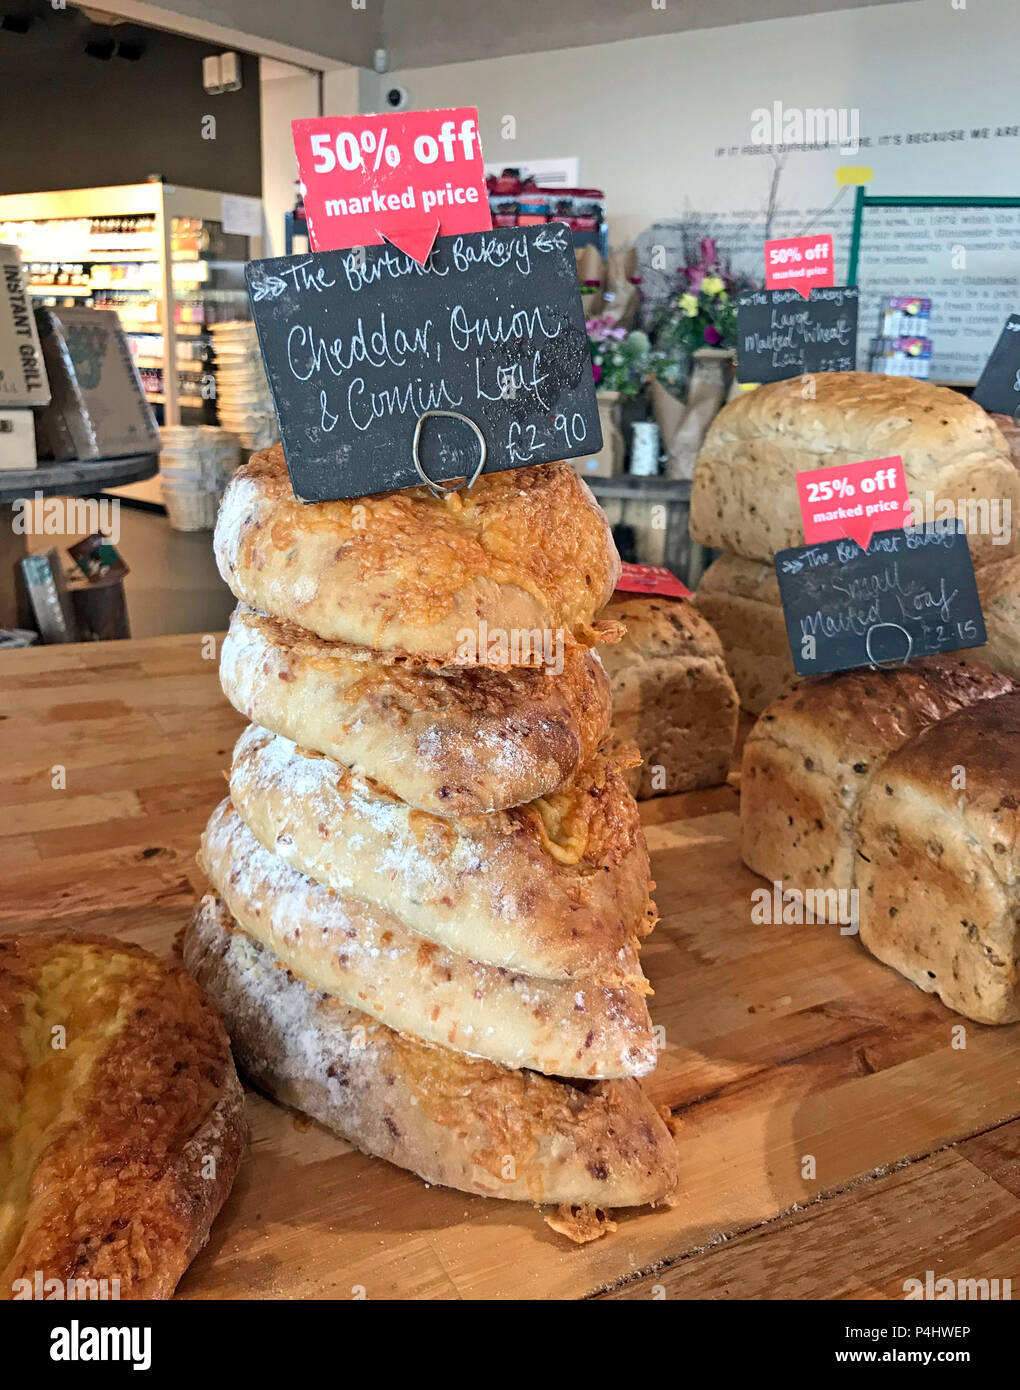 Du pain artisanal, M5 Boutique de la ferme de Gloucester, Gloucestershire, England, UK Banque D'Images